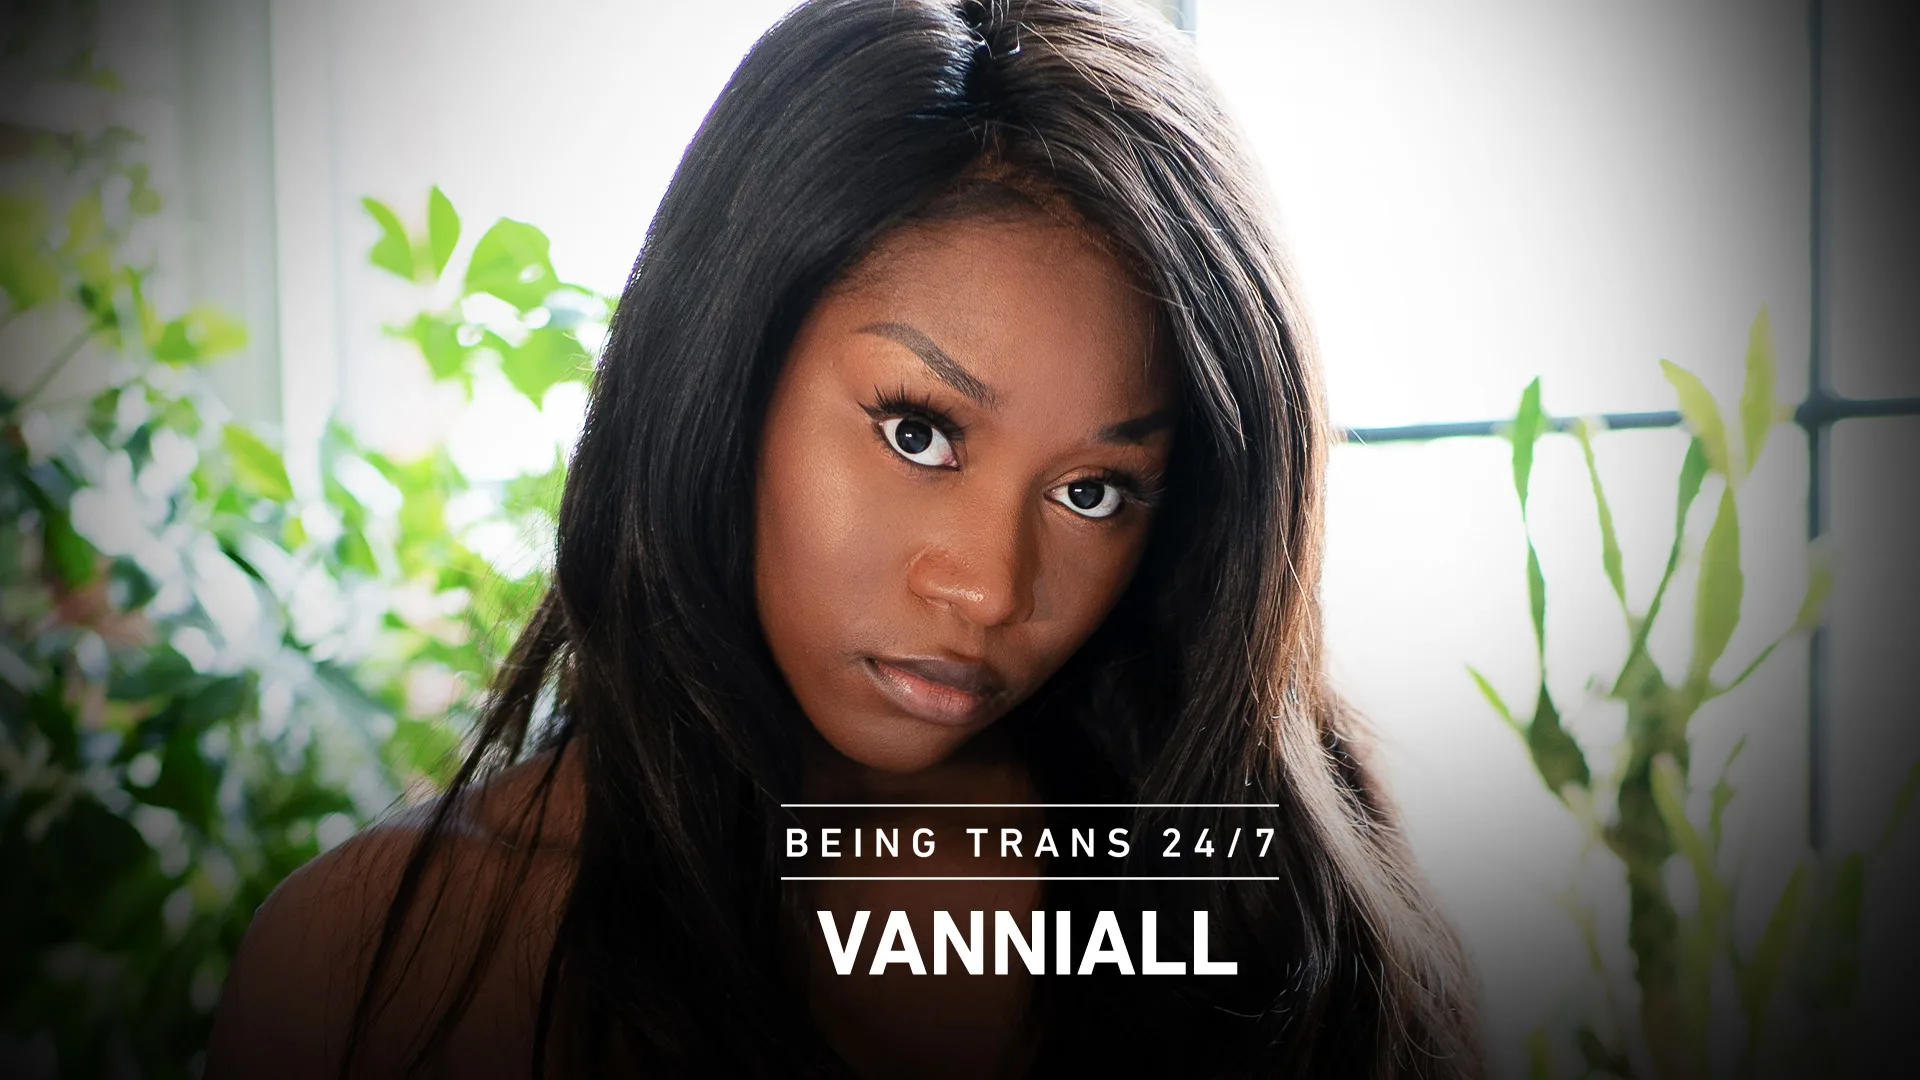 Vanniall - Transfixed